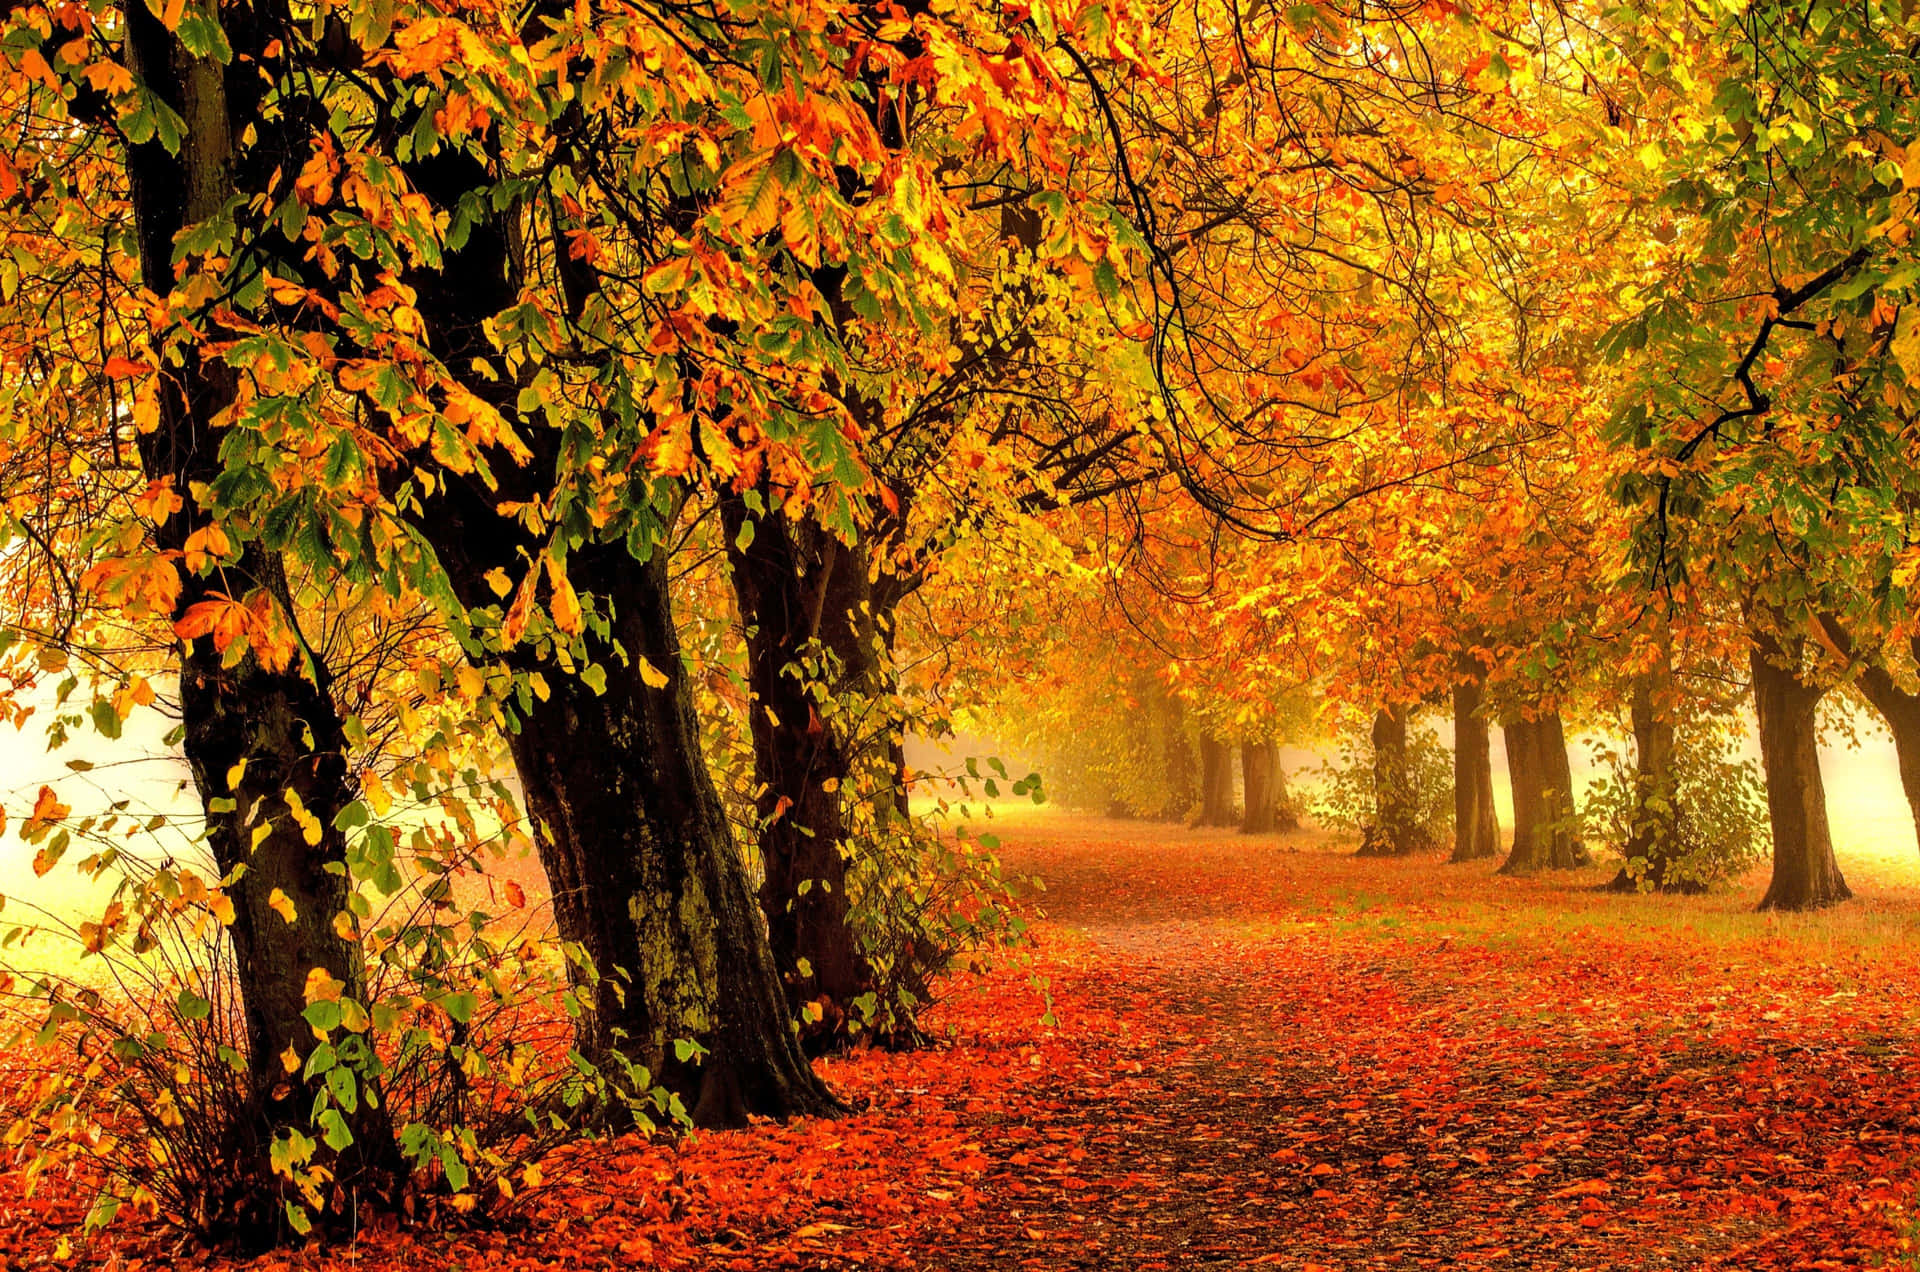 Tag en spadseretur i dette smukke efterårsscene. Wallpaper